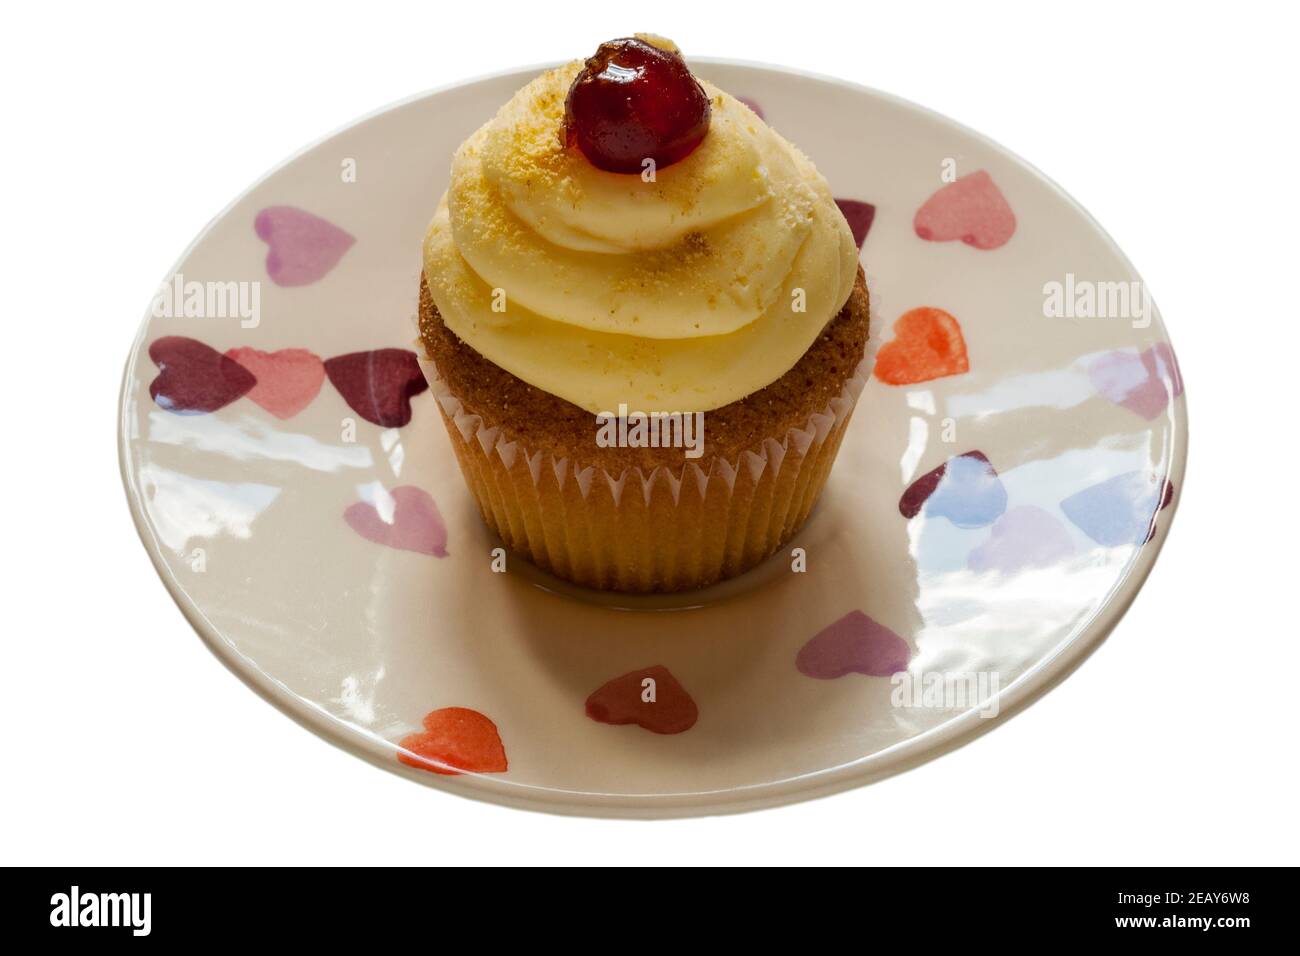 Biscake, biscuit et cupcake, gâteau au cerisier de M&S sur plaque avec coeurs sur fond blanc isolé Banque D'Images